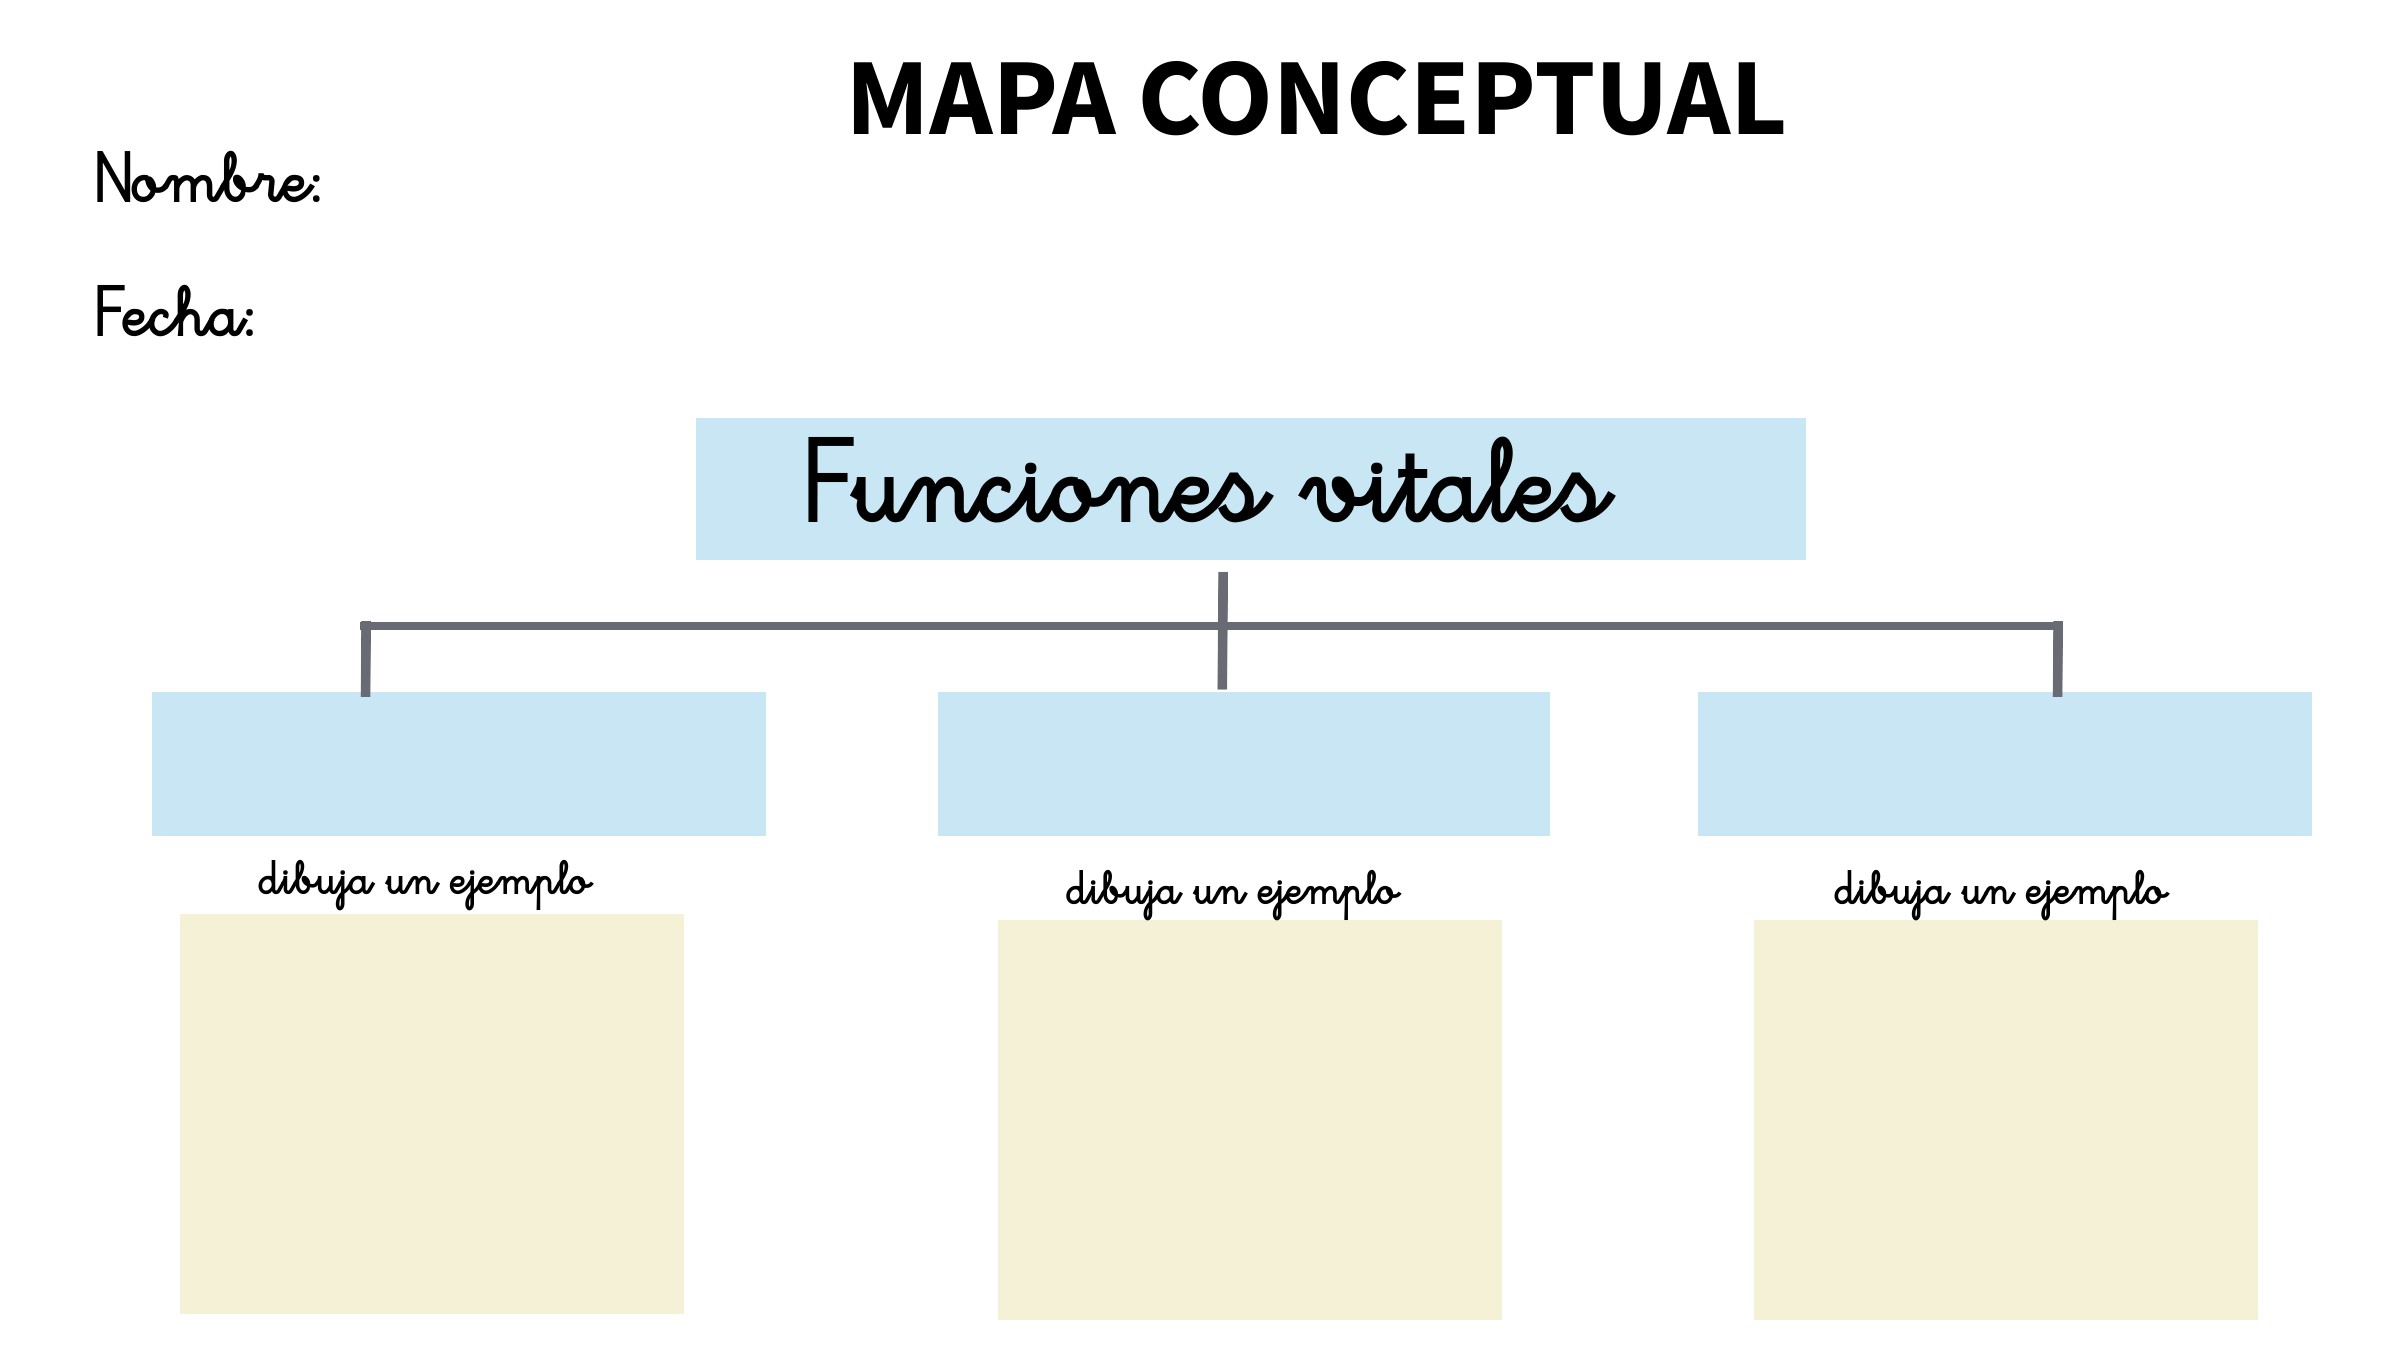 Realizar un mapa conceptual de las funciones vitales y poner un dibujo como ejemplo.